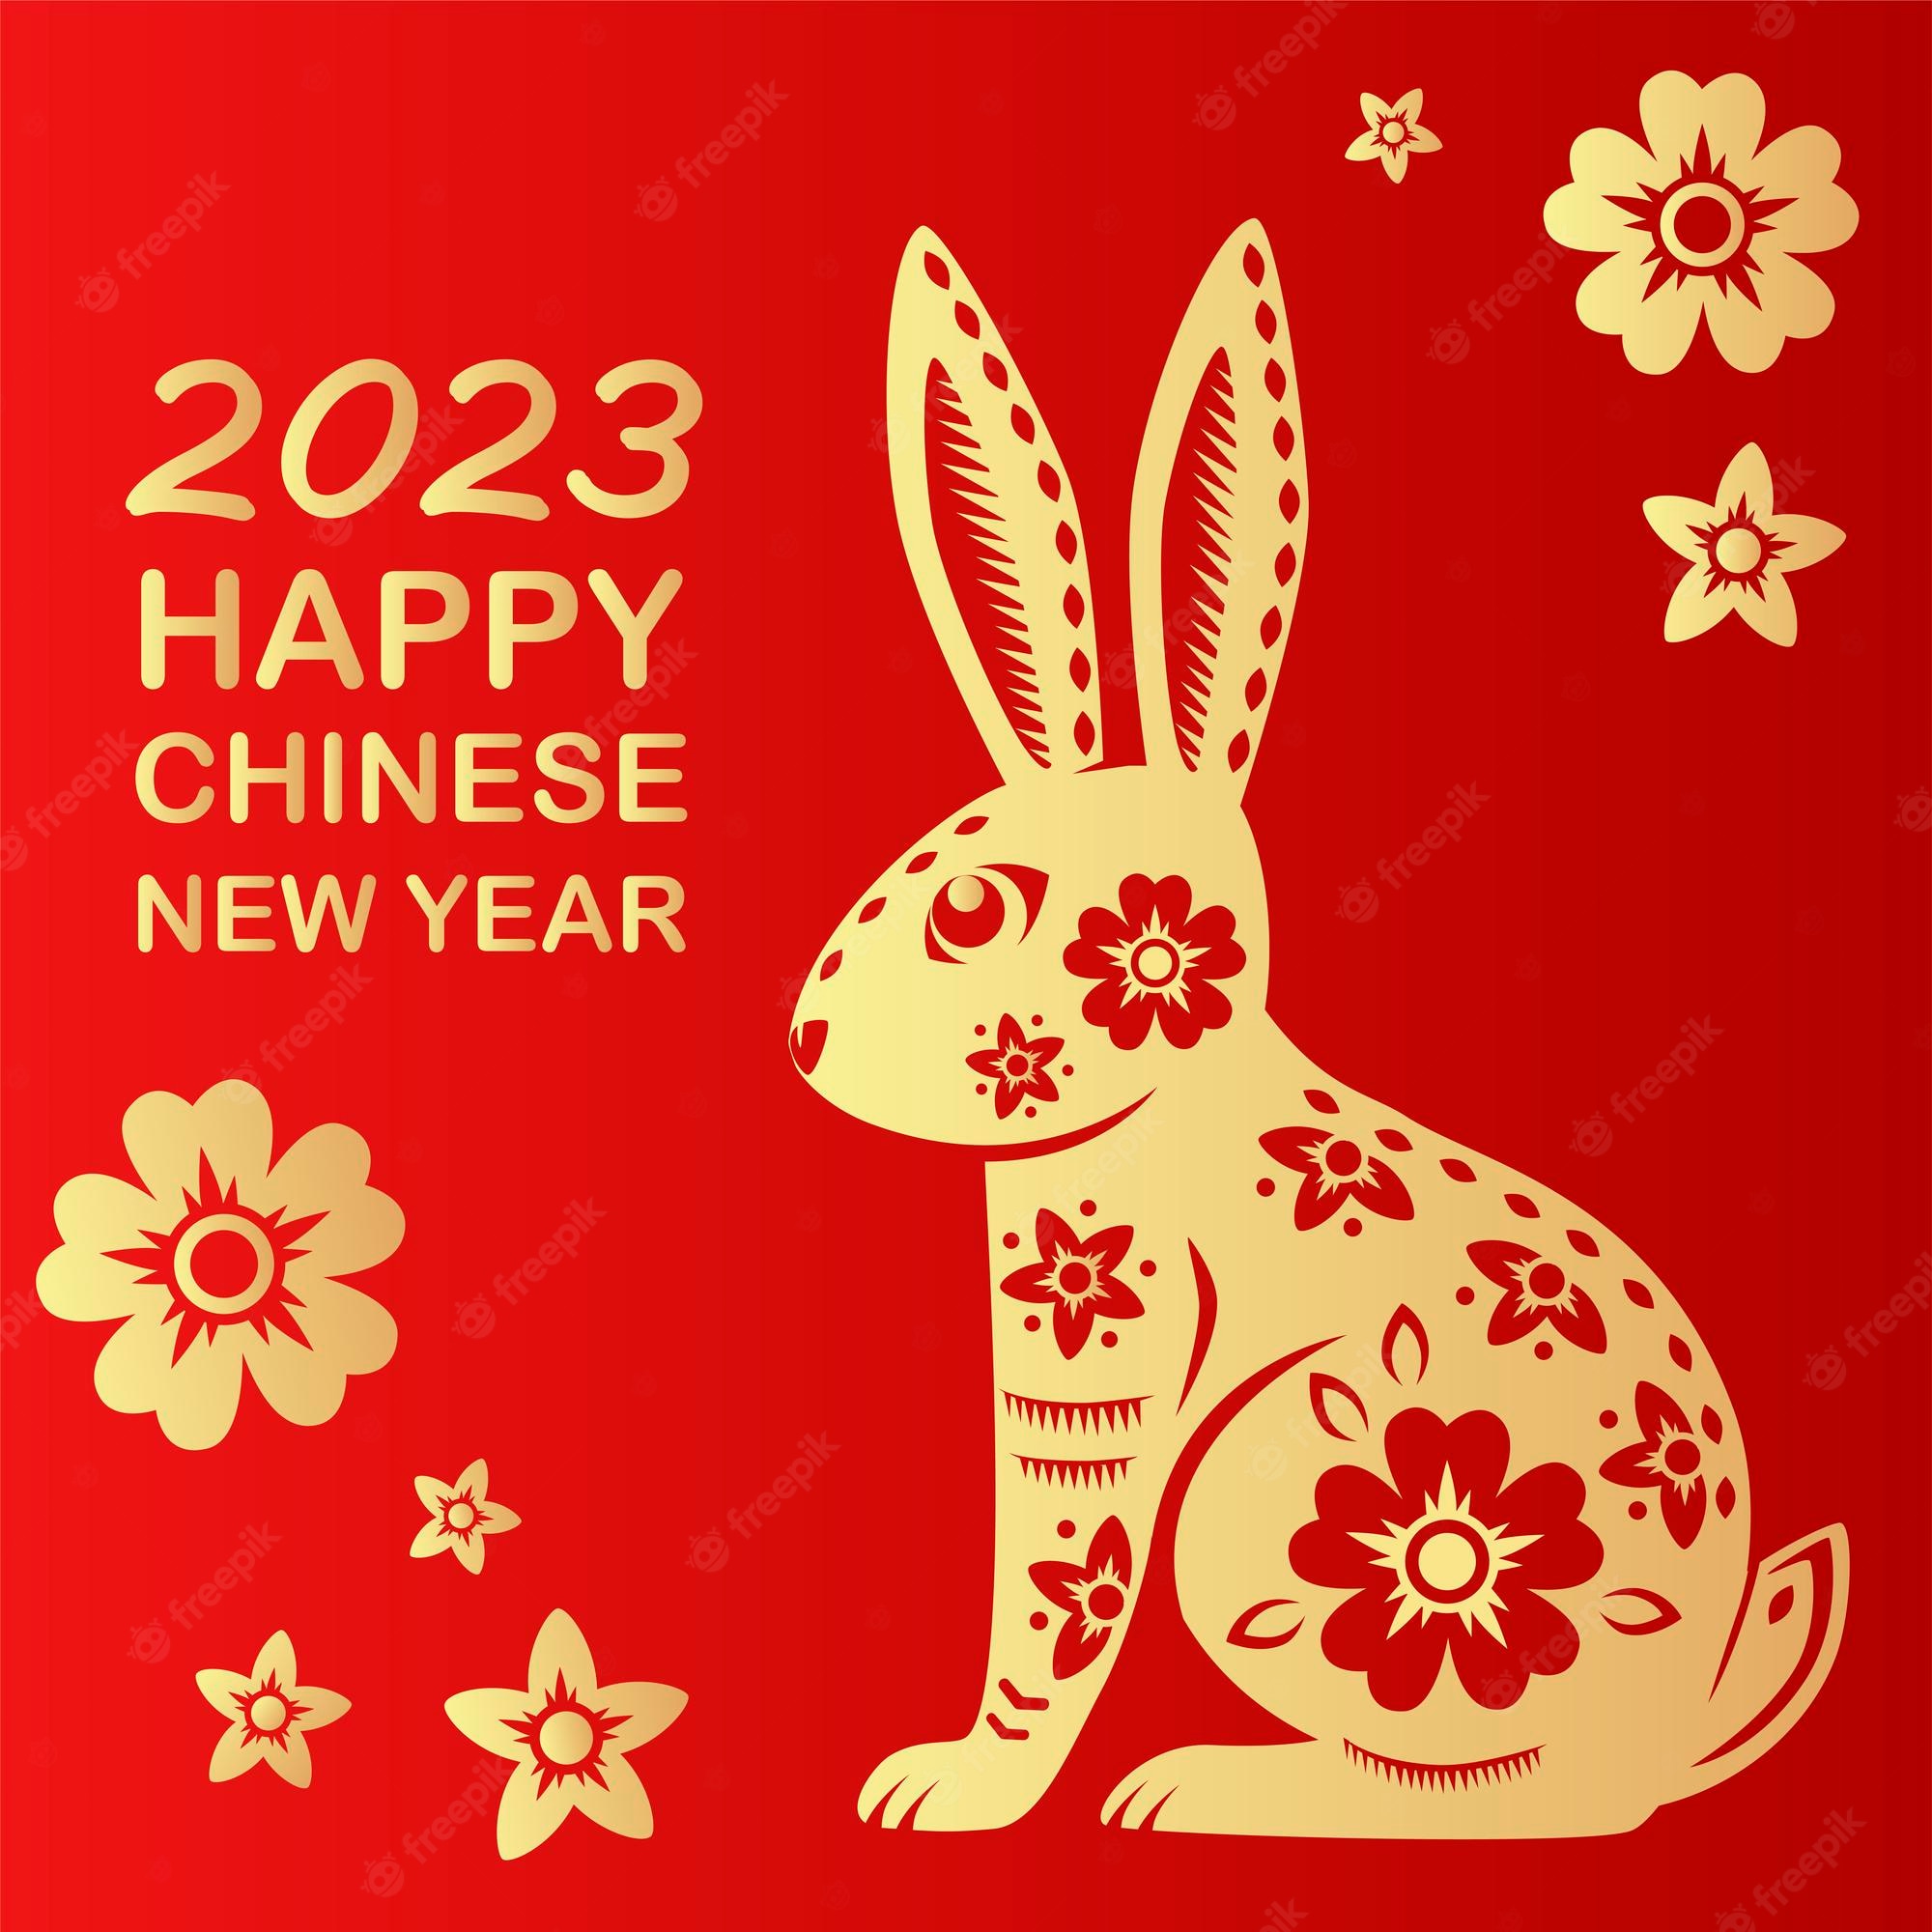 Šťastný čínský nový rok!